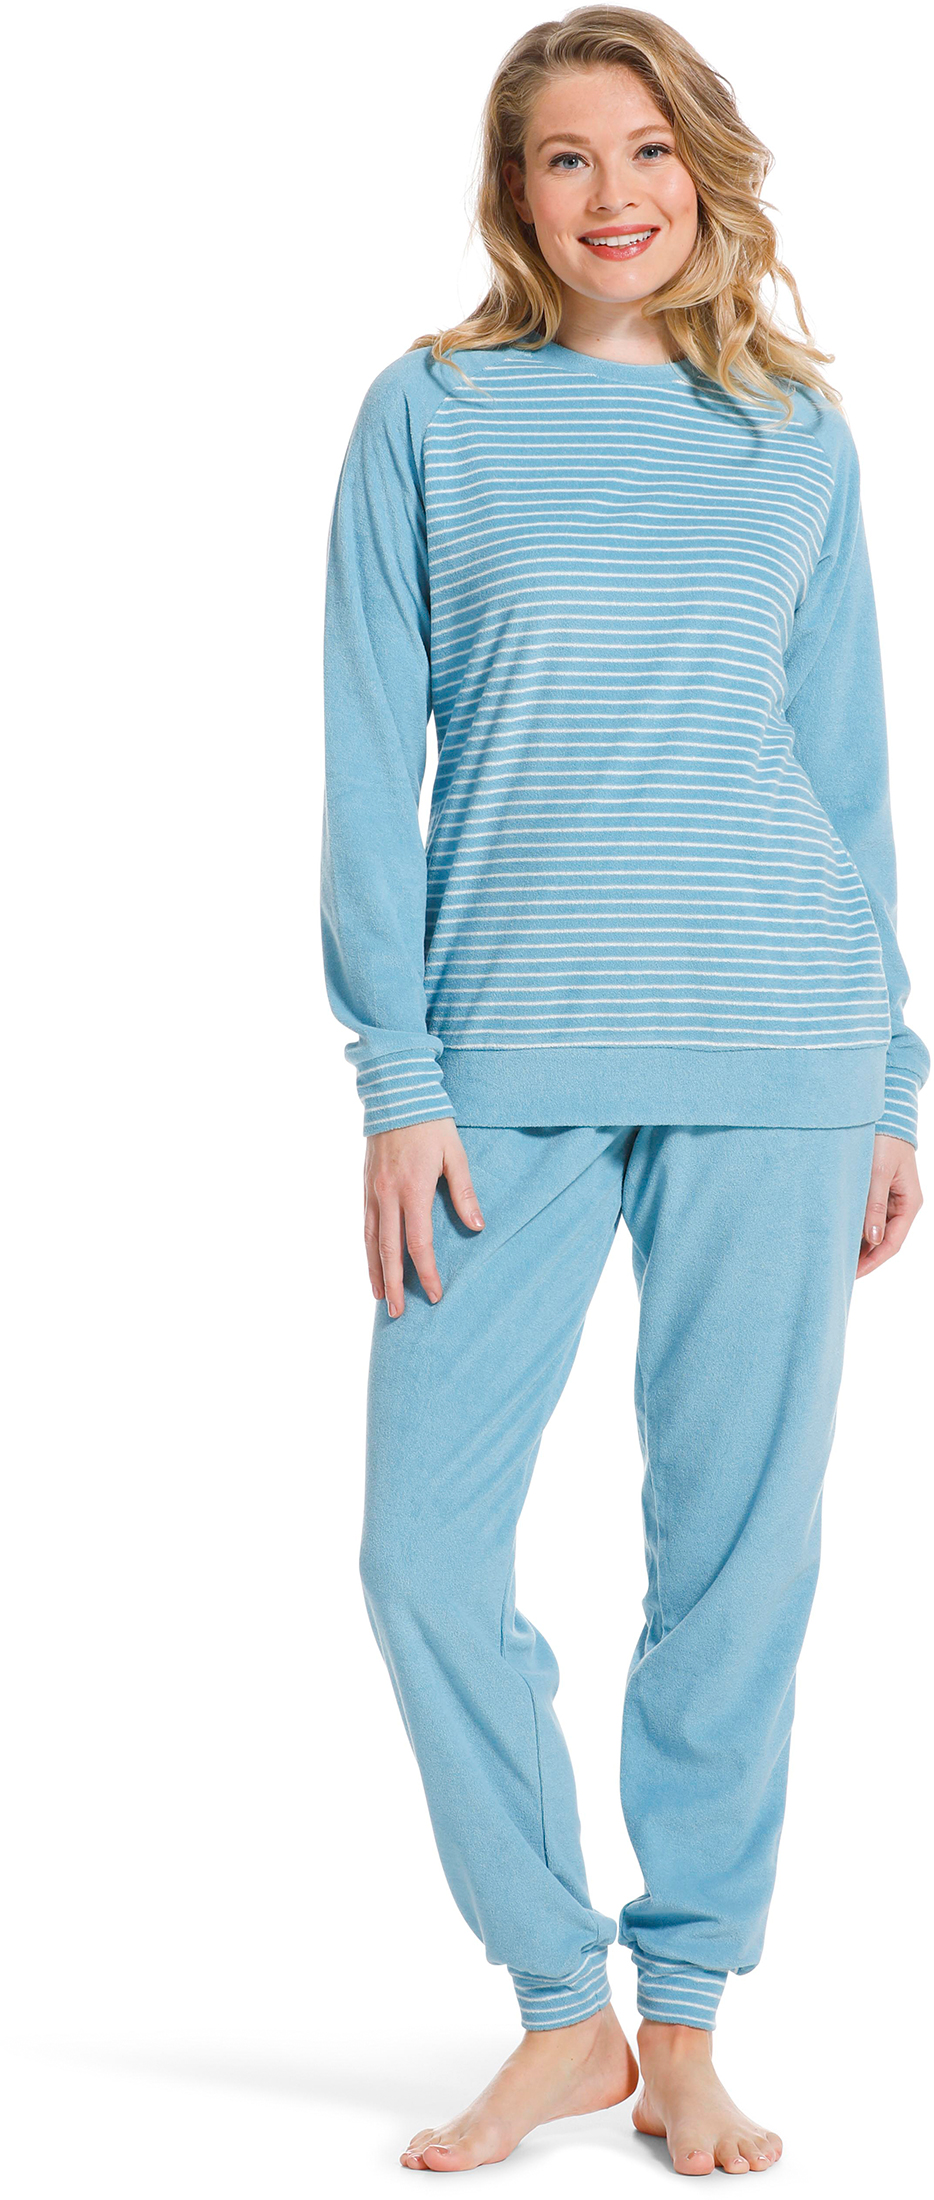 Pastunette badstof dames pyjama 20222-144-2 - Blauw - 52